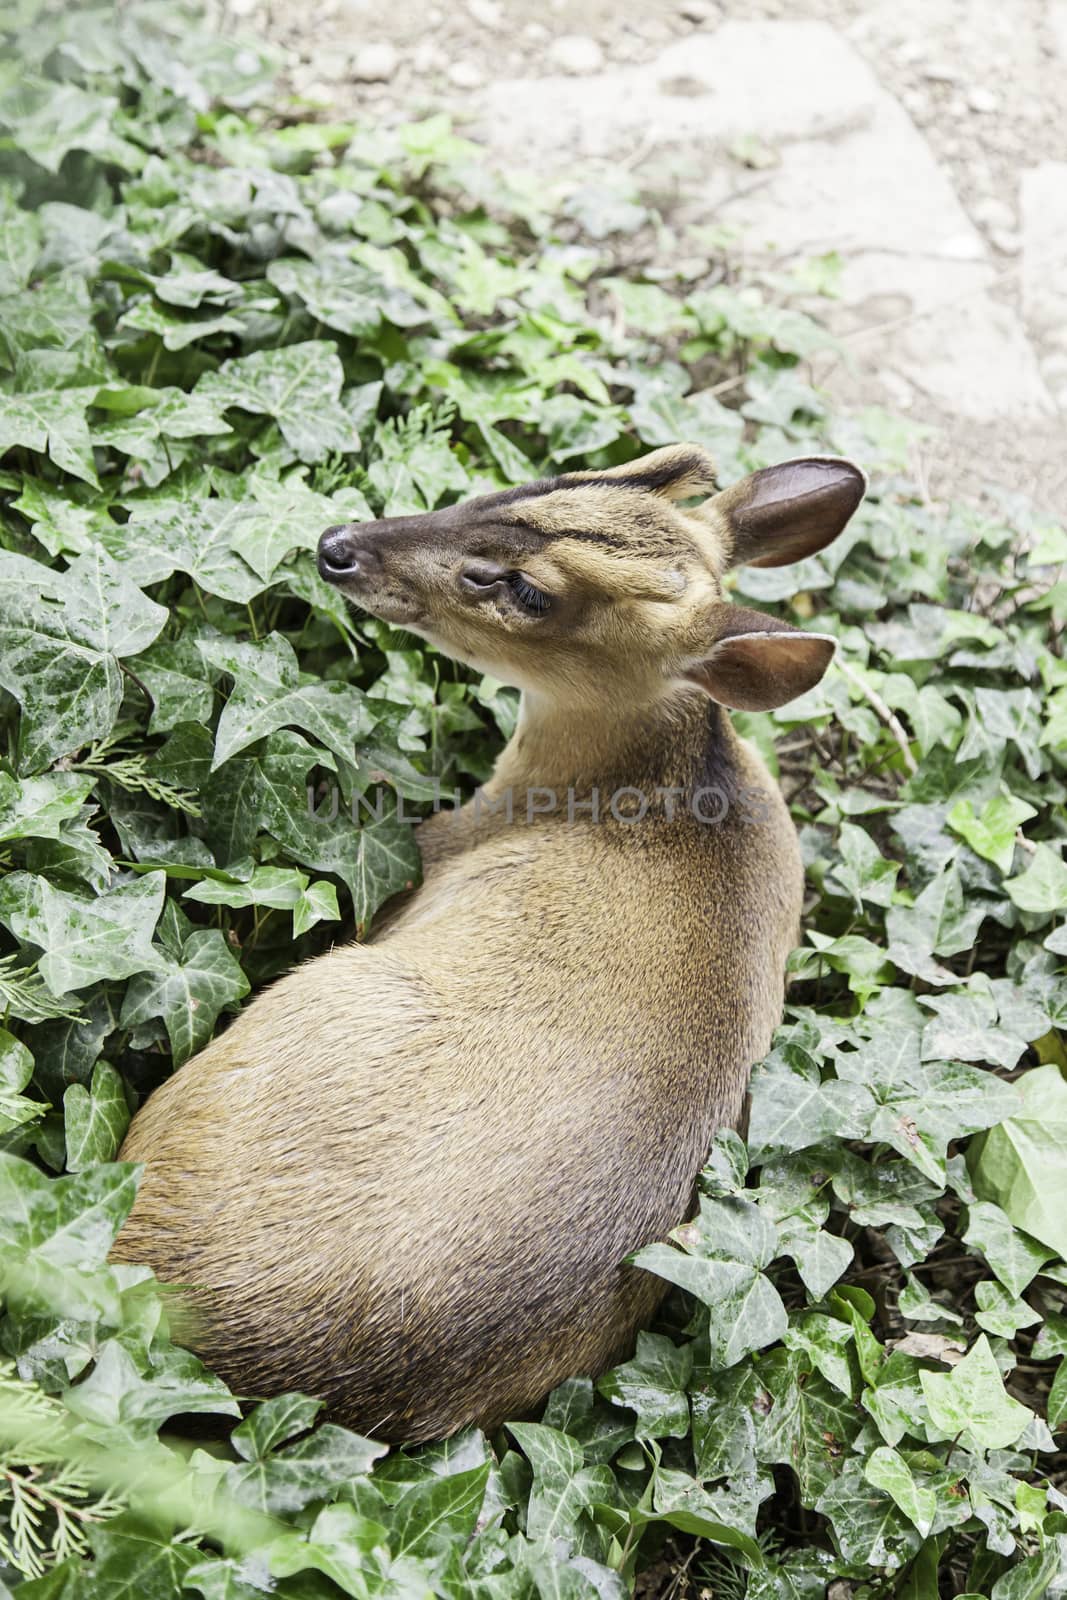 Deer in nature by esebene